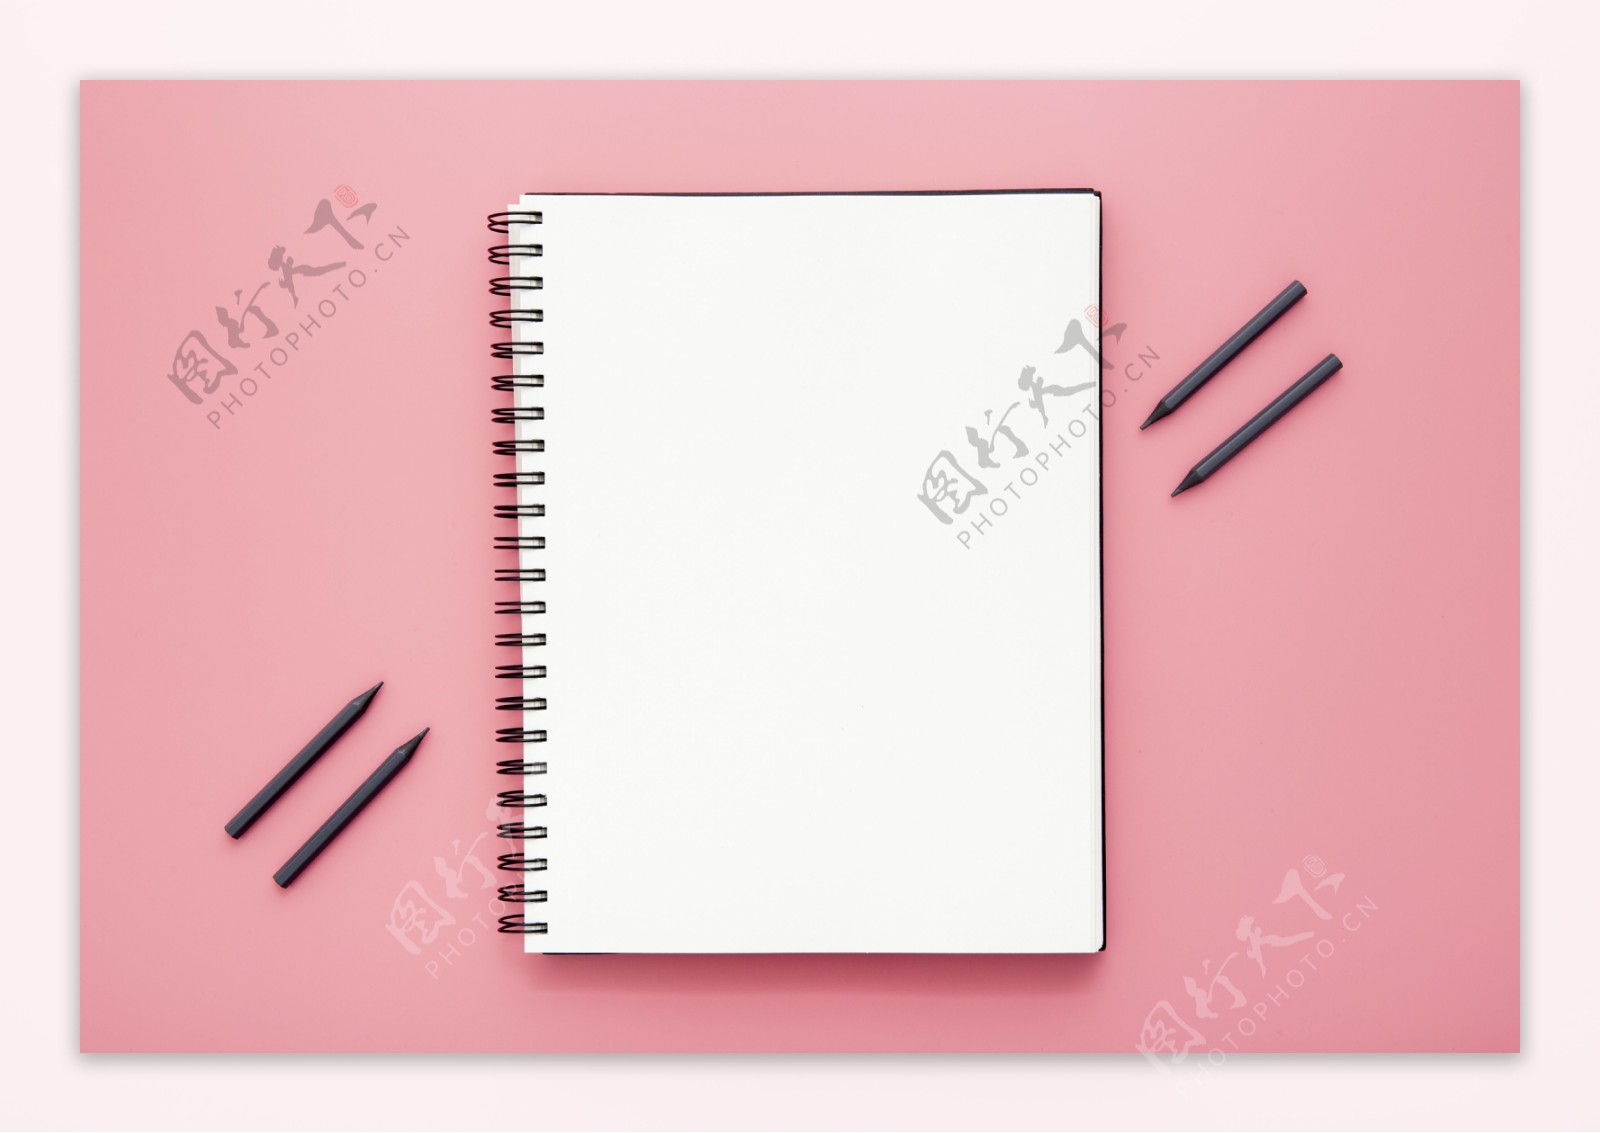 笔记本与粉色桌面